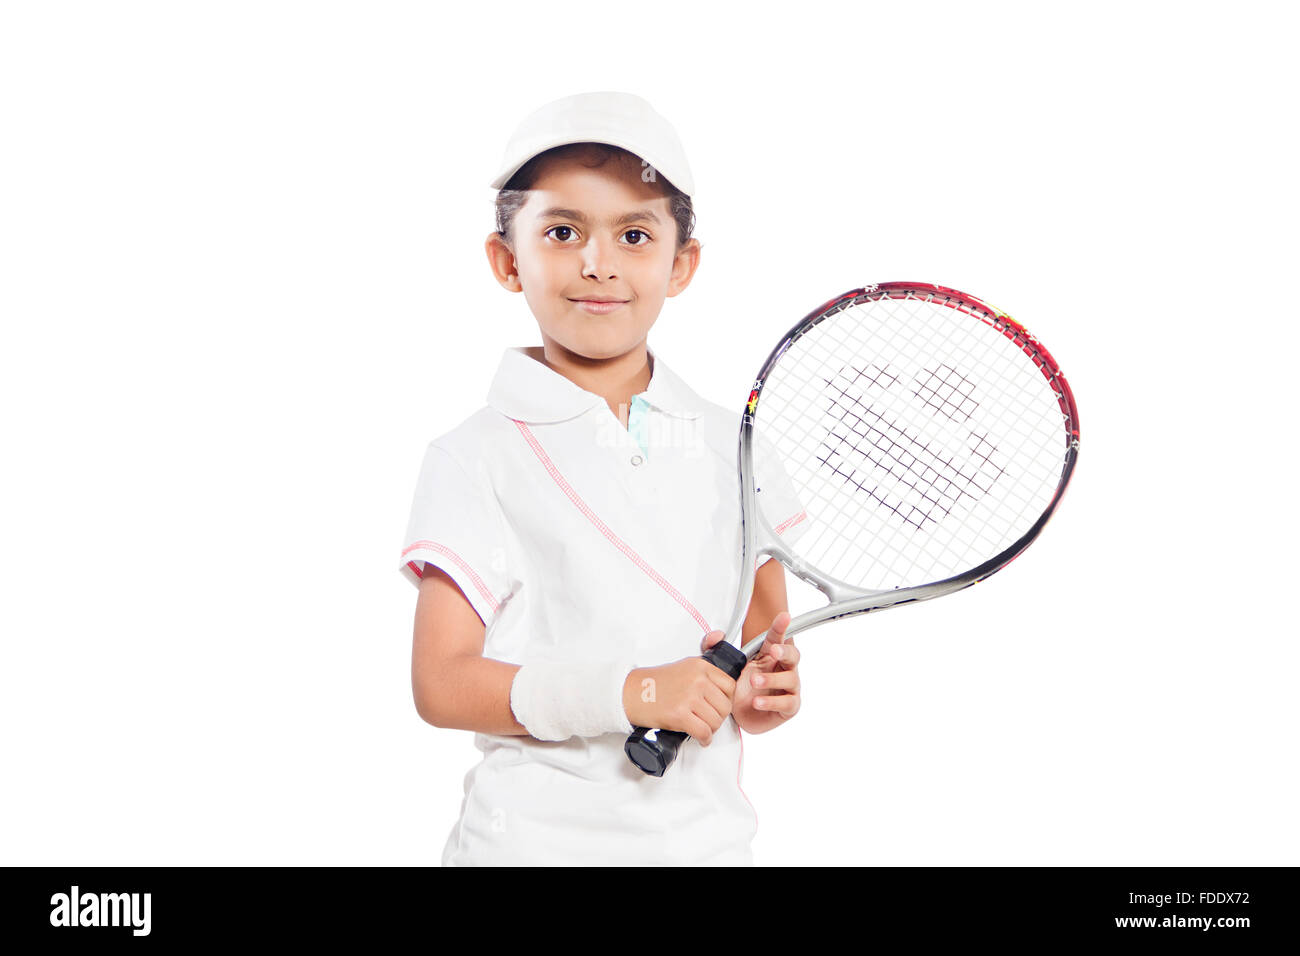 1 personne seule détermination girl kid player smiling raquette tennis succès sportif Banque D'Images